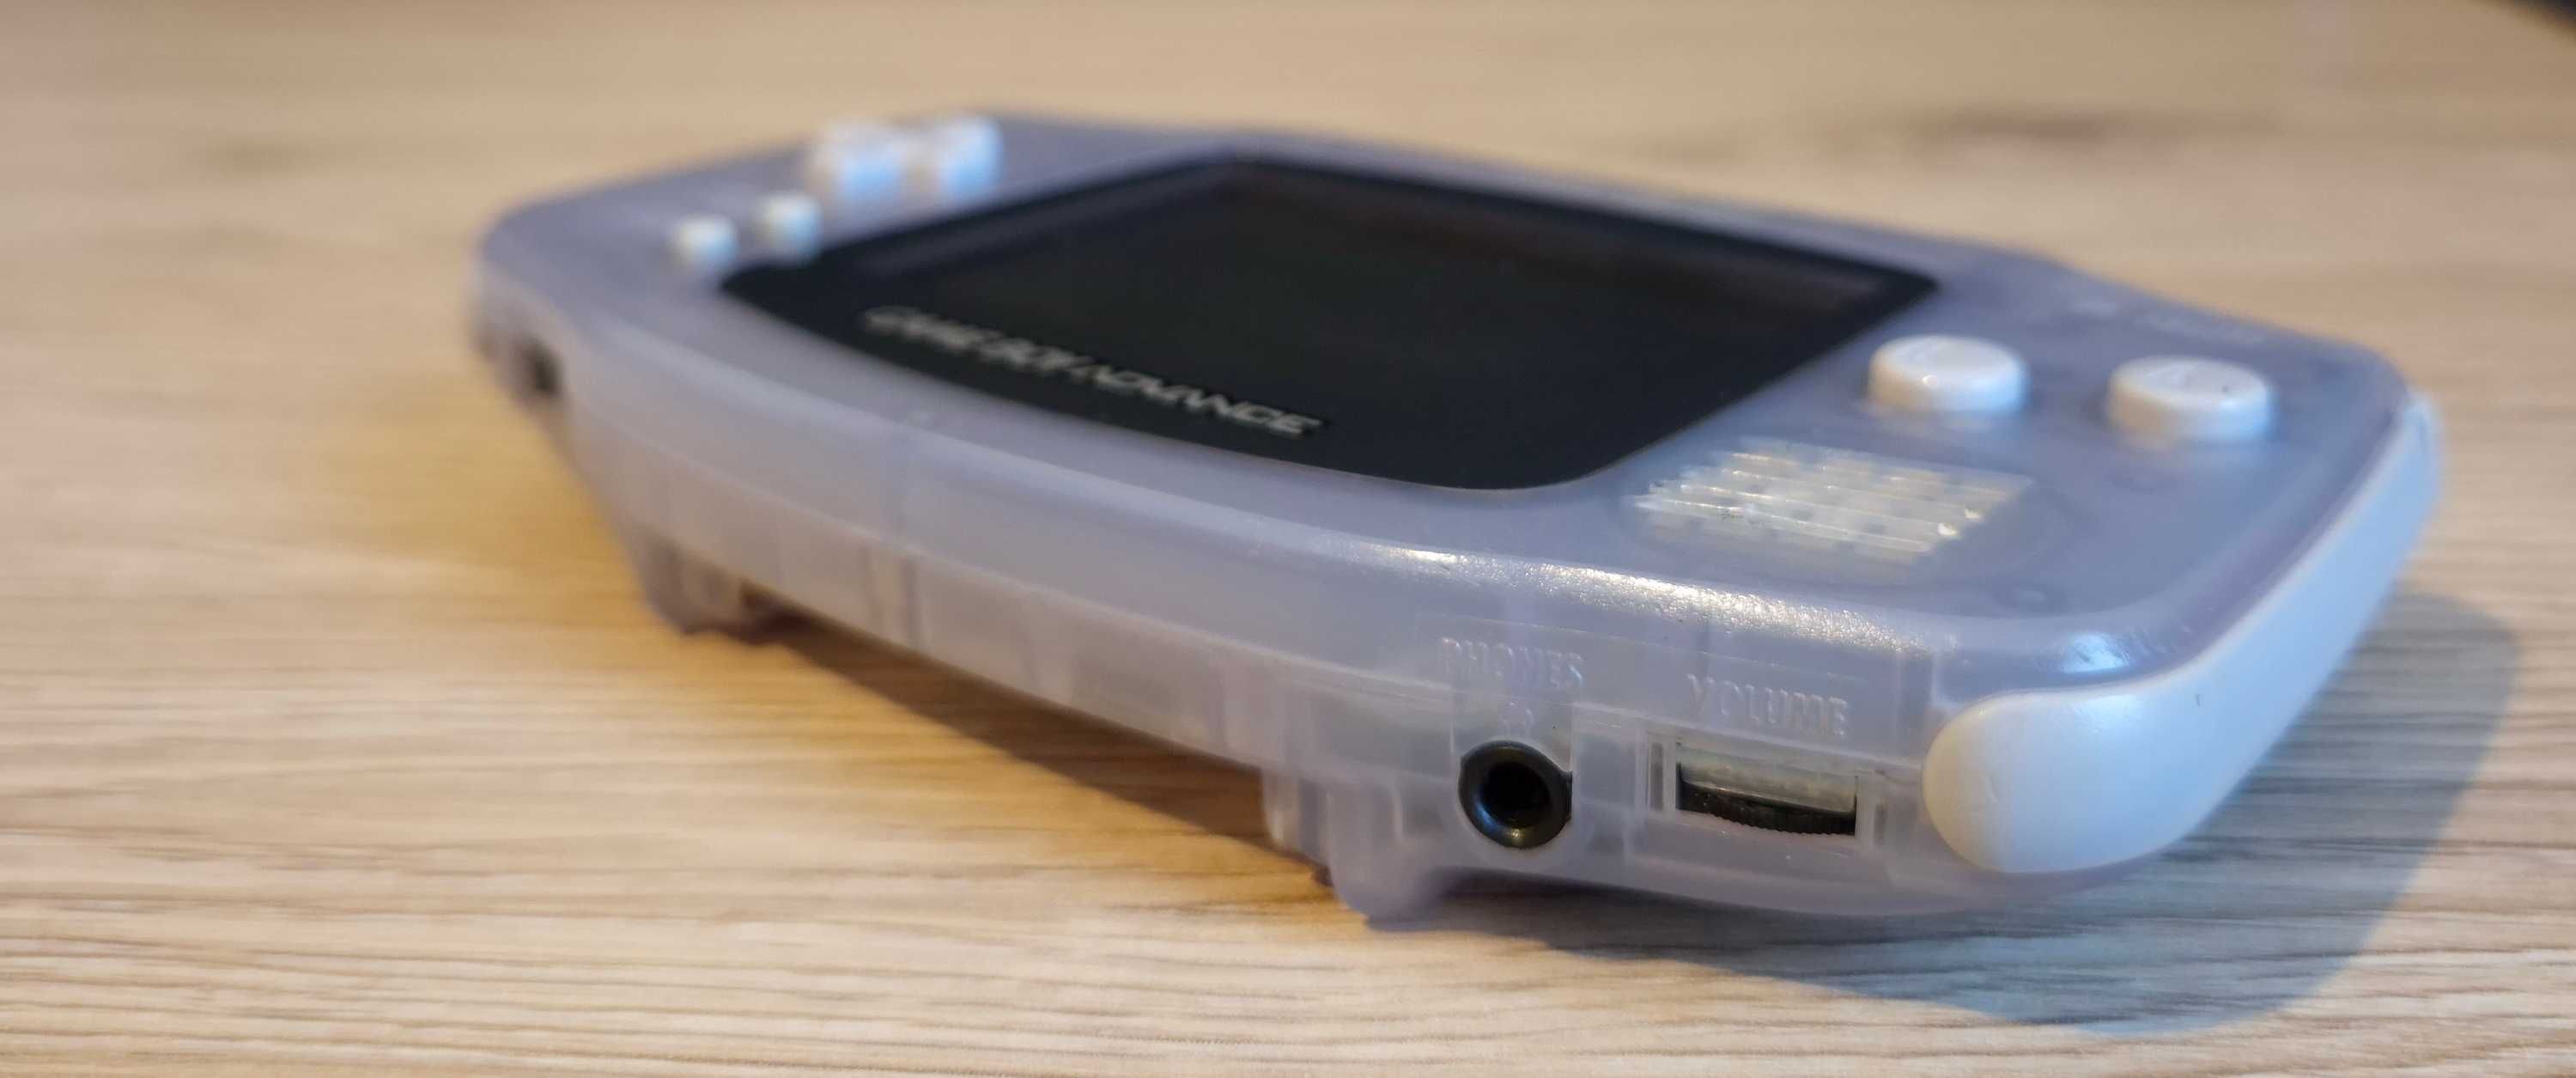 Consola portabila Nintendo Gameboy Advance - albastru transparent